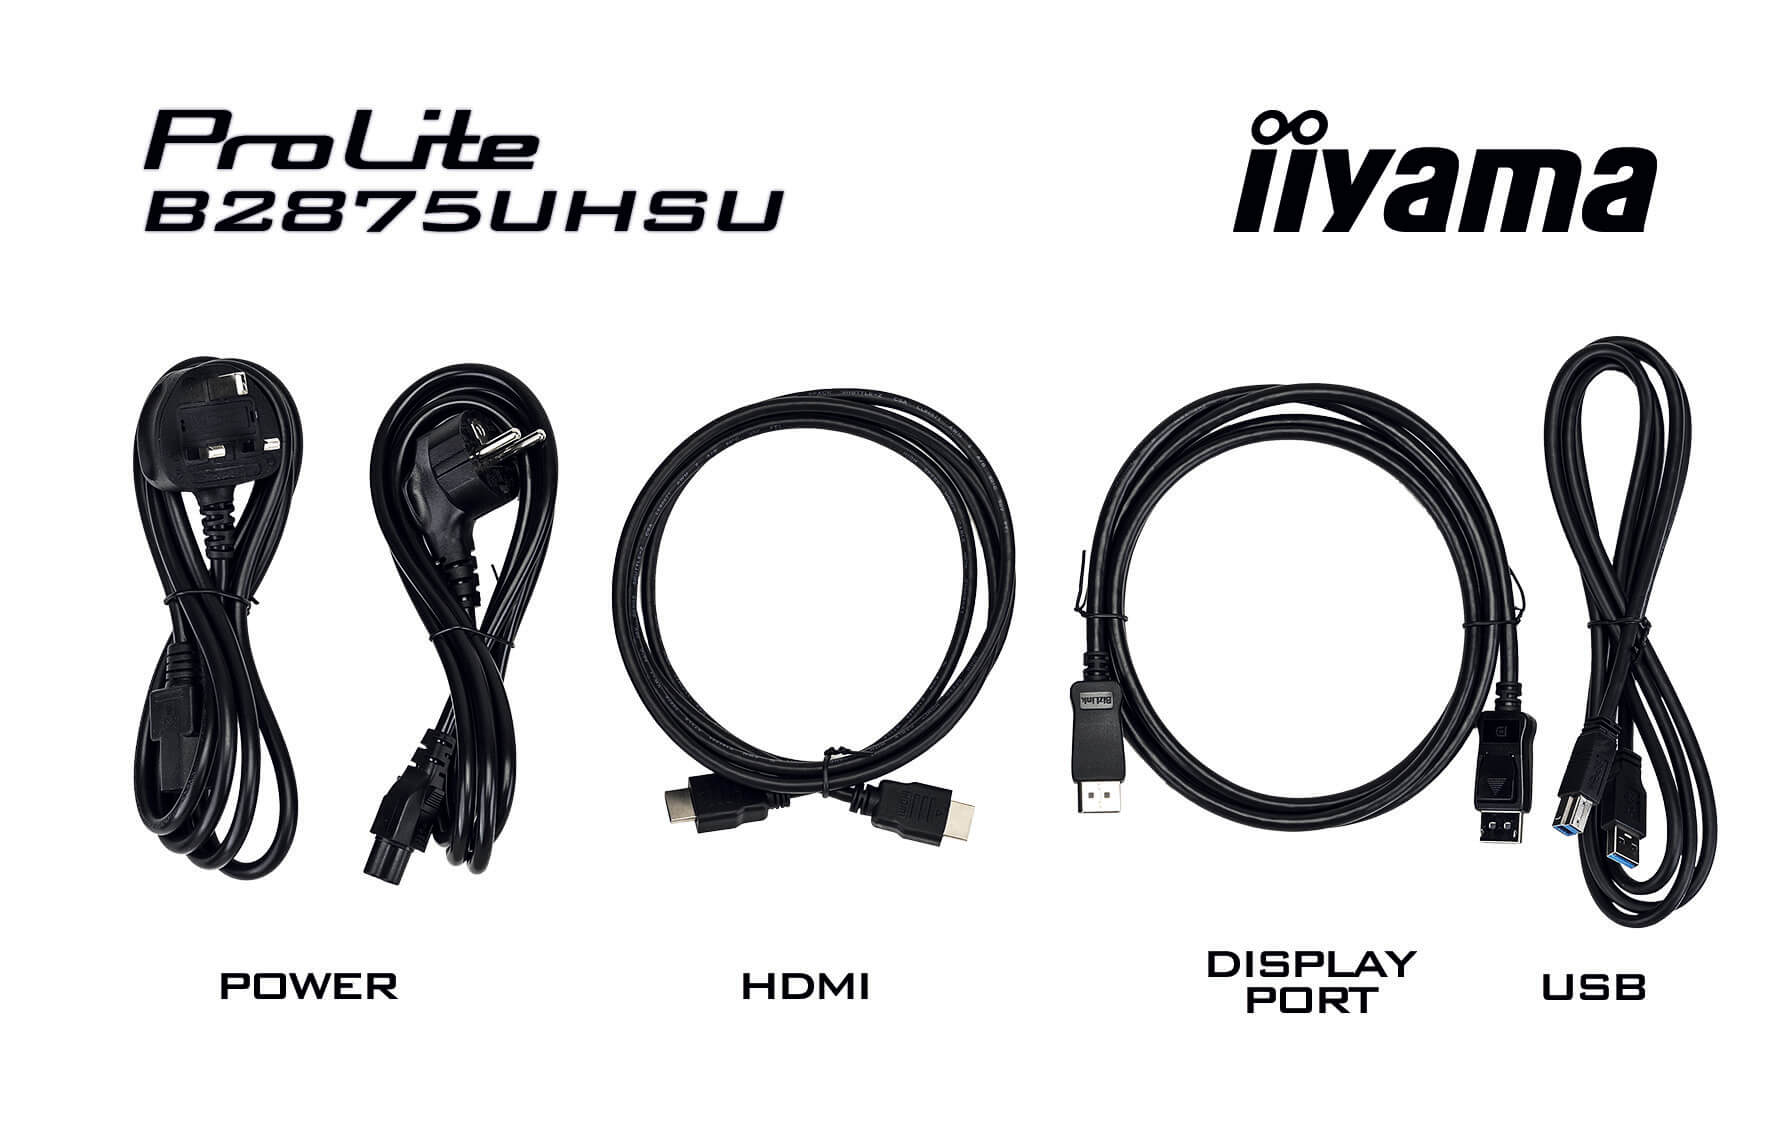 Iiyama ProLite B2875UHSU-B1 | 28" (71cm) | 4K Monitor